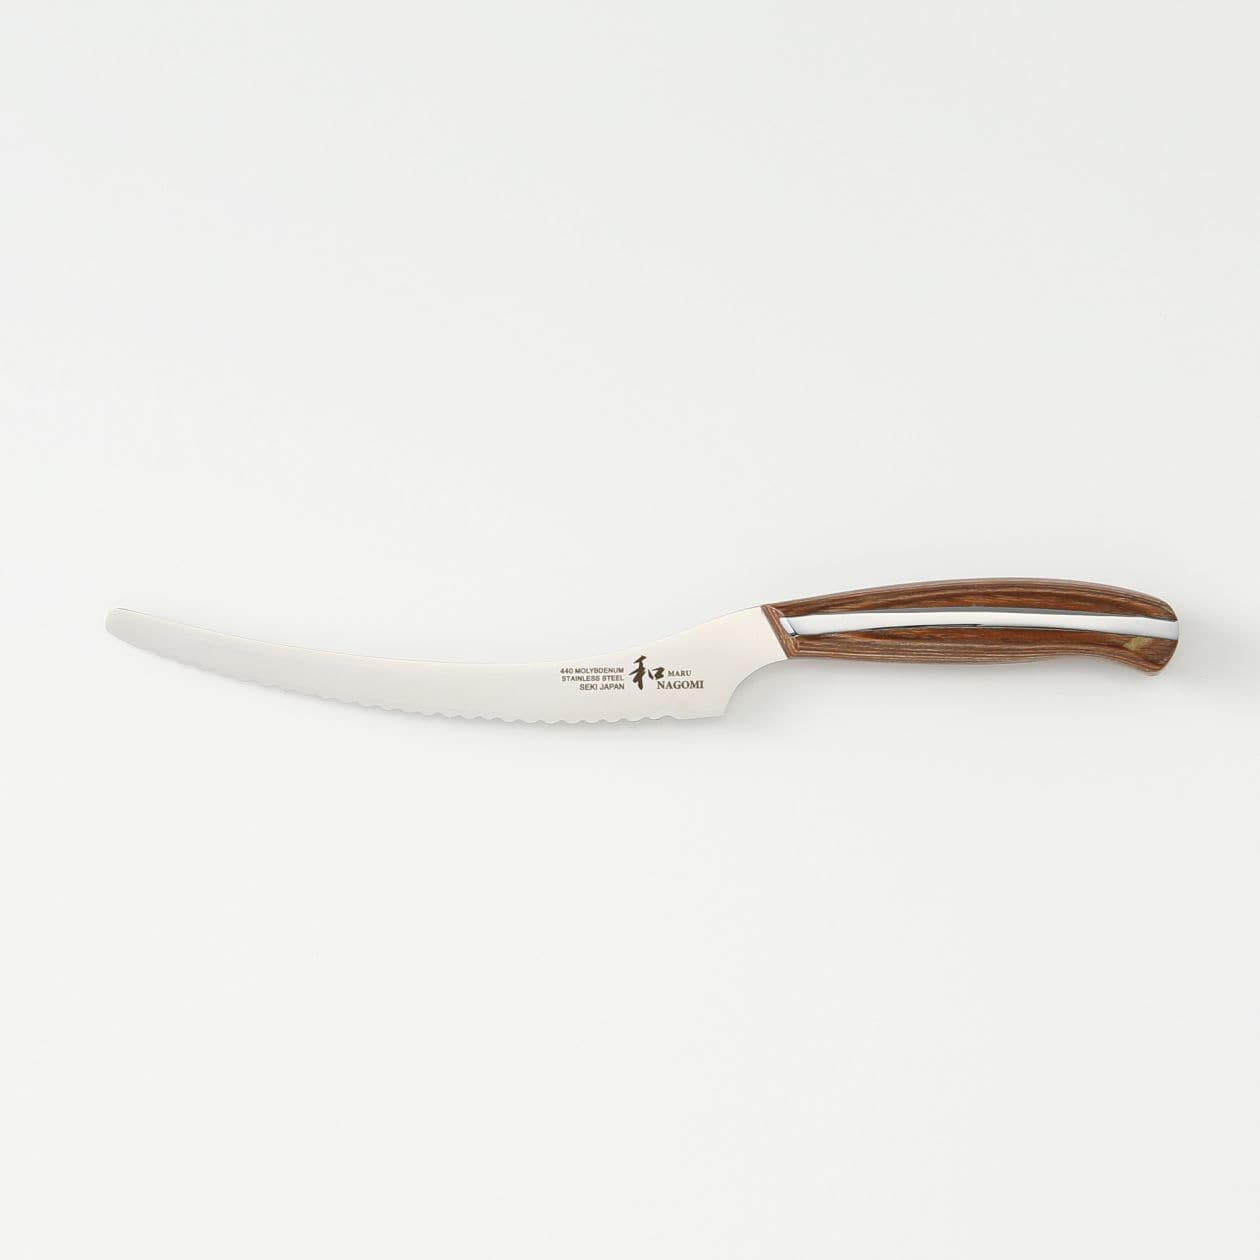 ケーキナイフ 和nagomi 刃渡り約15 5cm 諸国良品 生活雑貨 通販 無印良品